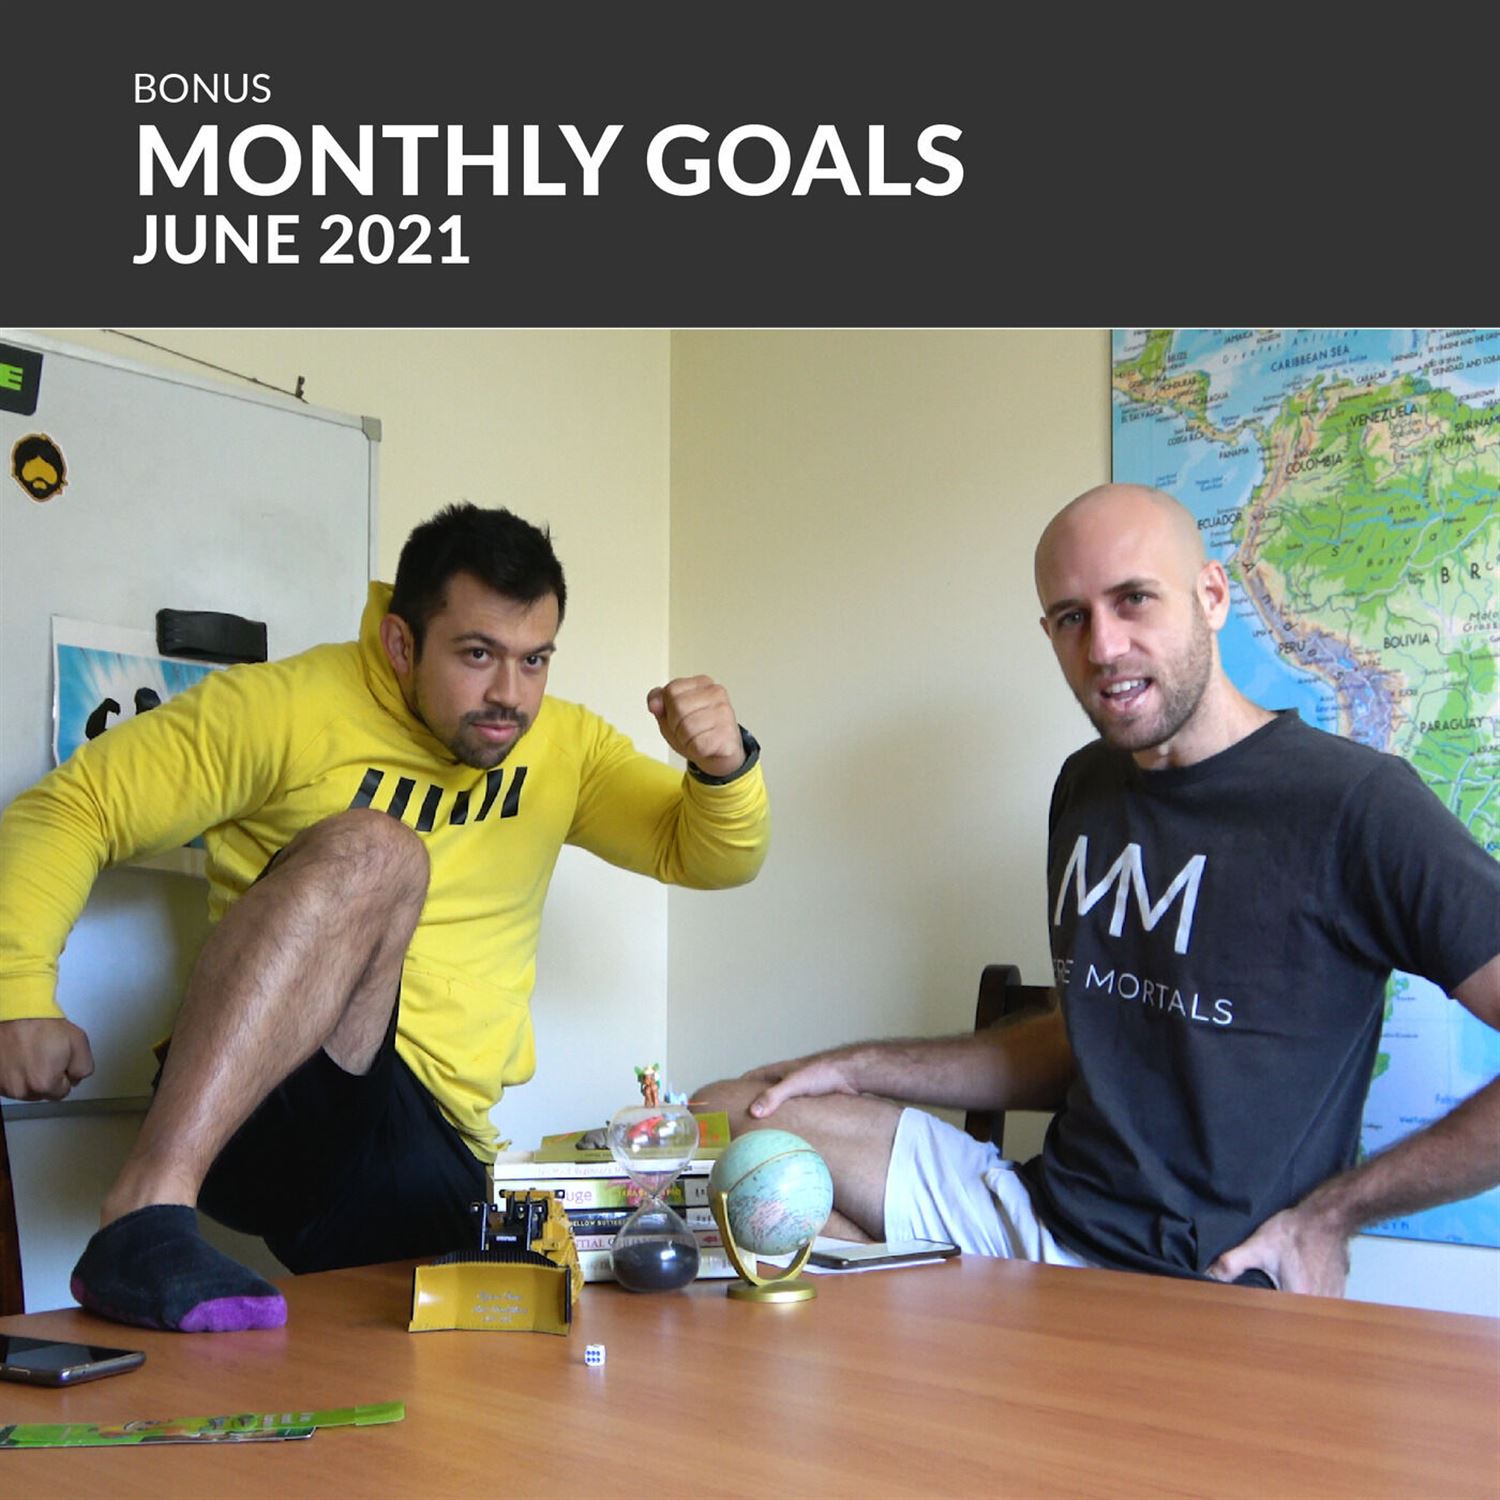 Mere Mortals Monthly Goals - June 2021